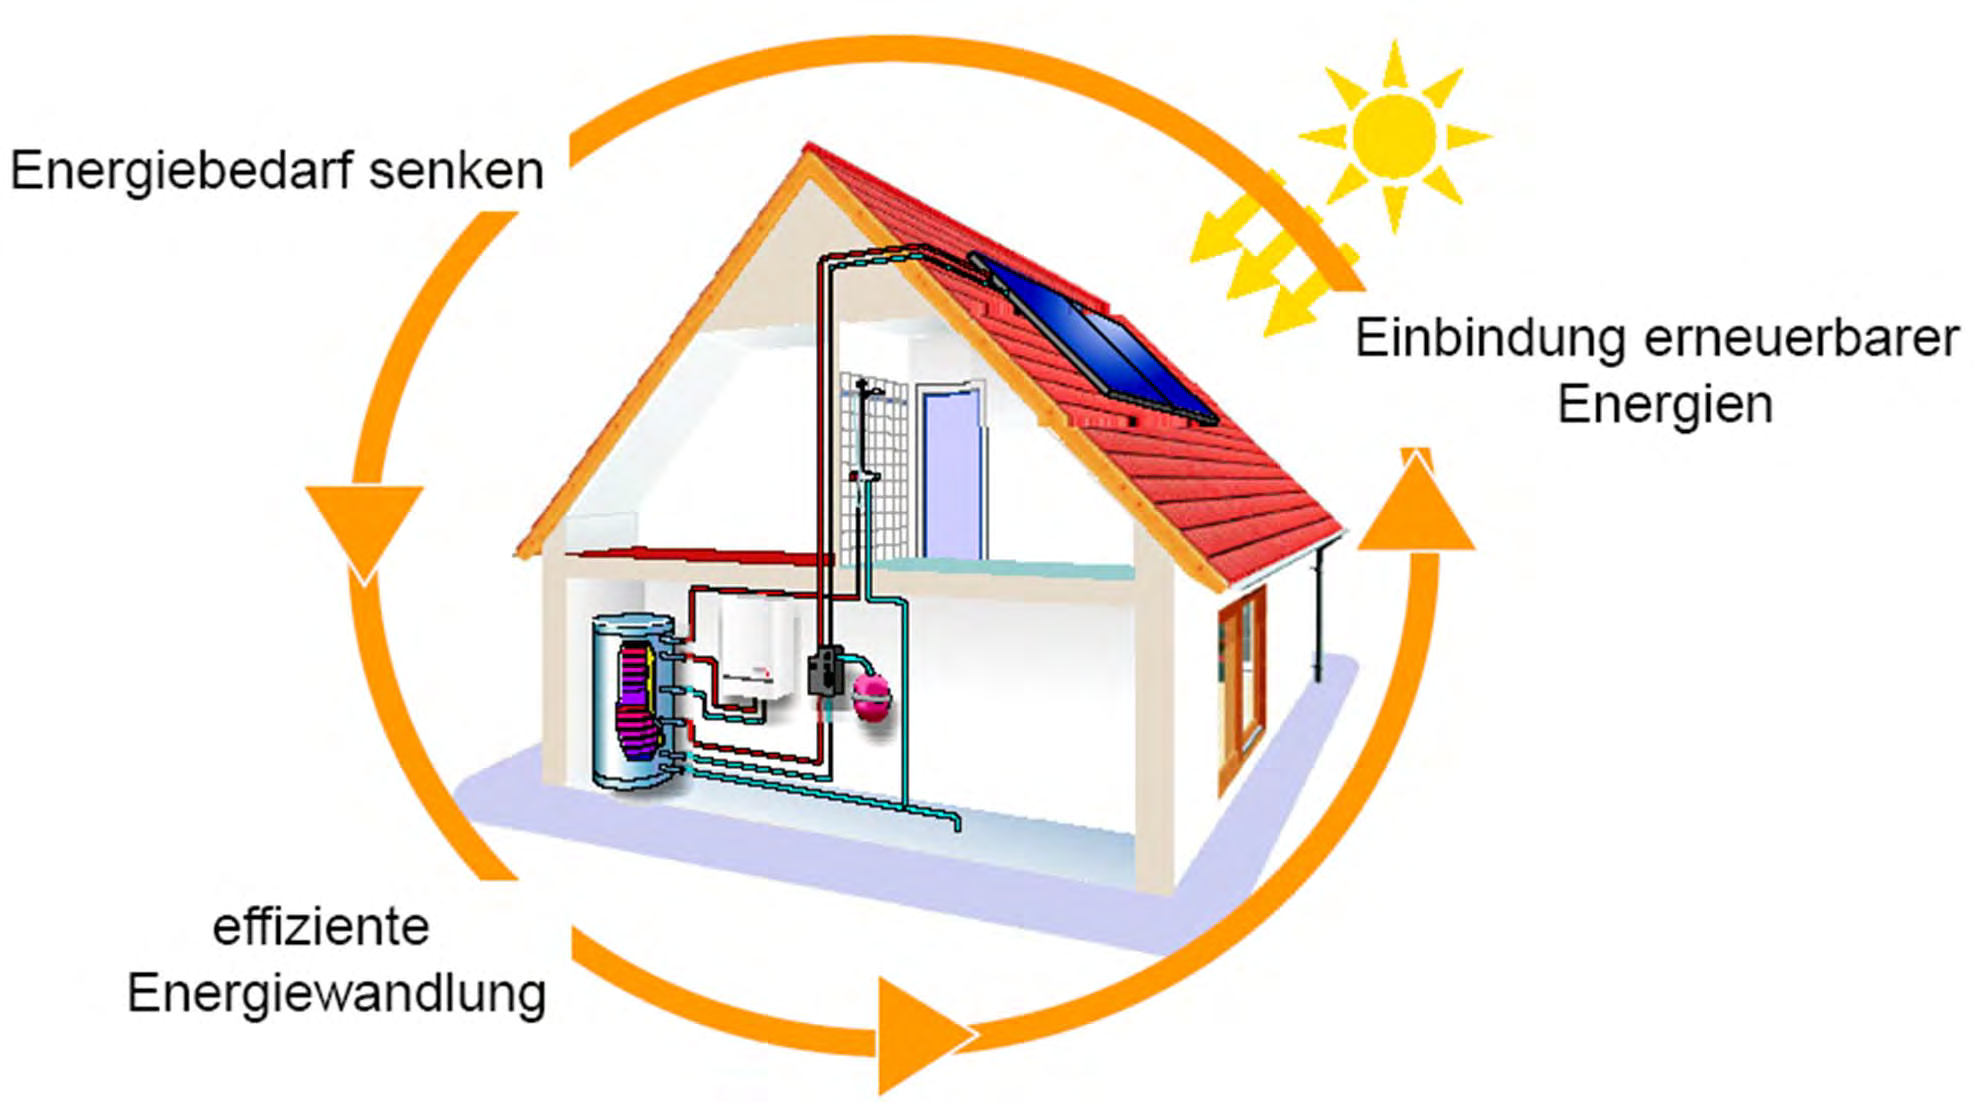 Grundkonzept Energieeffizienz Energiebedarf senken Baulicher Wärmeschutz (Ht -Wert) Lüftungskonzept Passive solare Gewinne Einbindung erneuerbarer Energien Biomasse